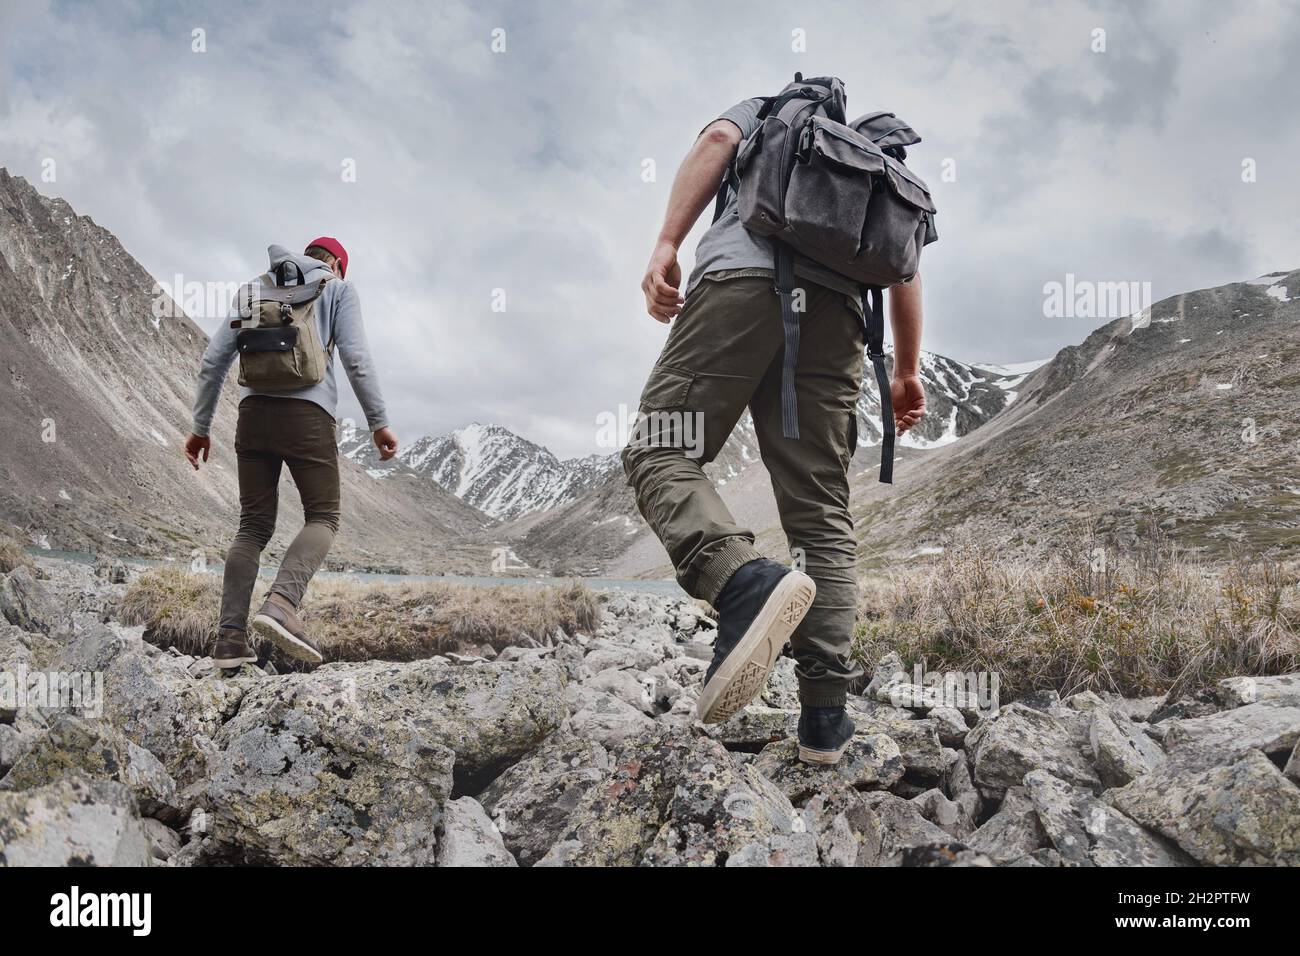 Zwei junge Wanderer oder Touristen mit kleinen Rucksäcken wandern in den Bergen. Konzept des aktiven Tourismus Stockfoto